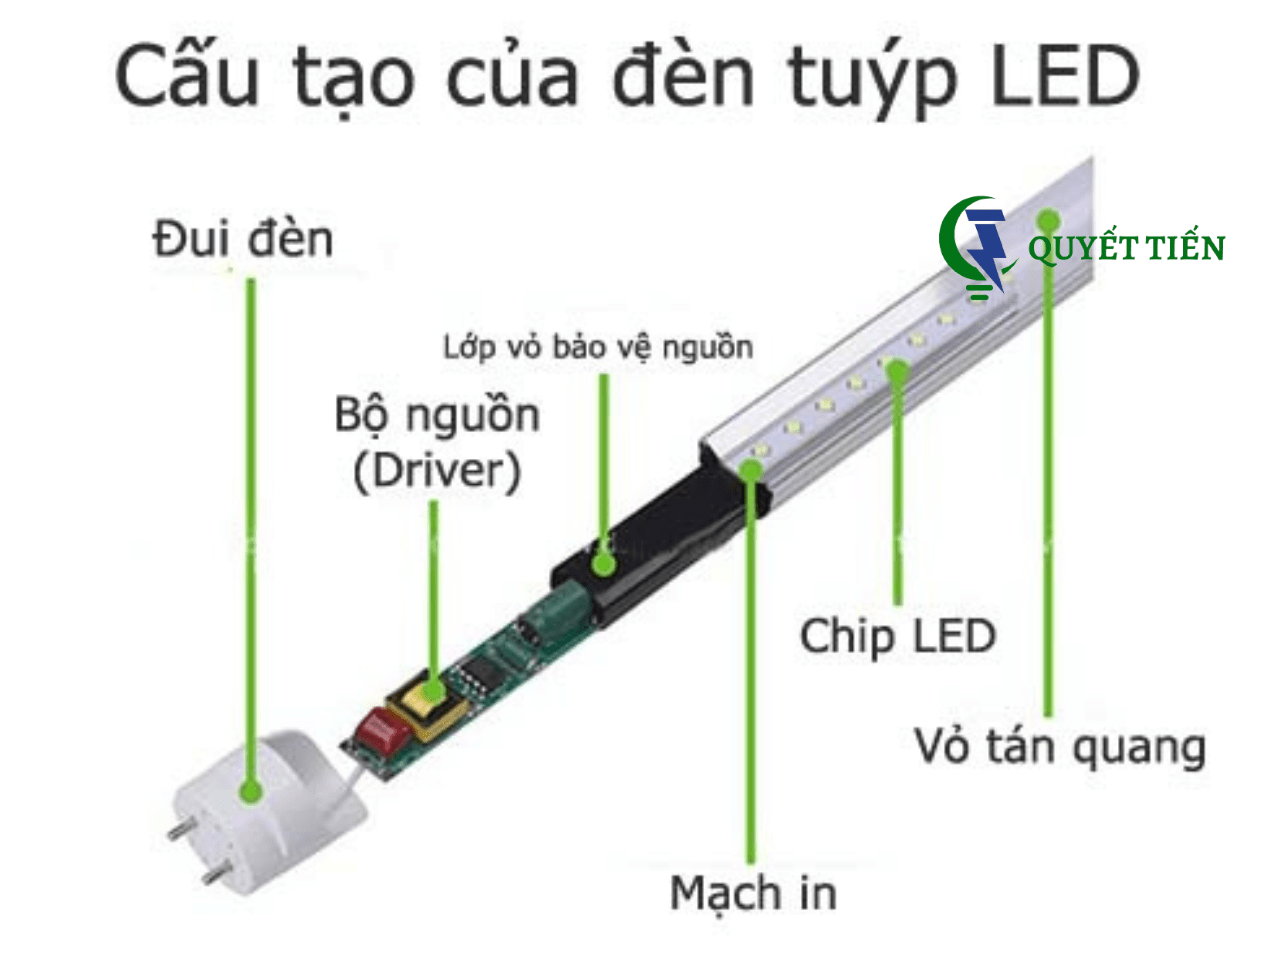 Cấu tạo của đèn tuýp LED